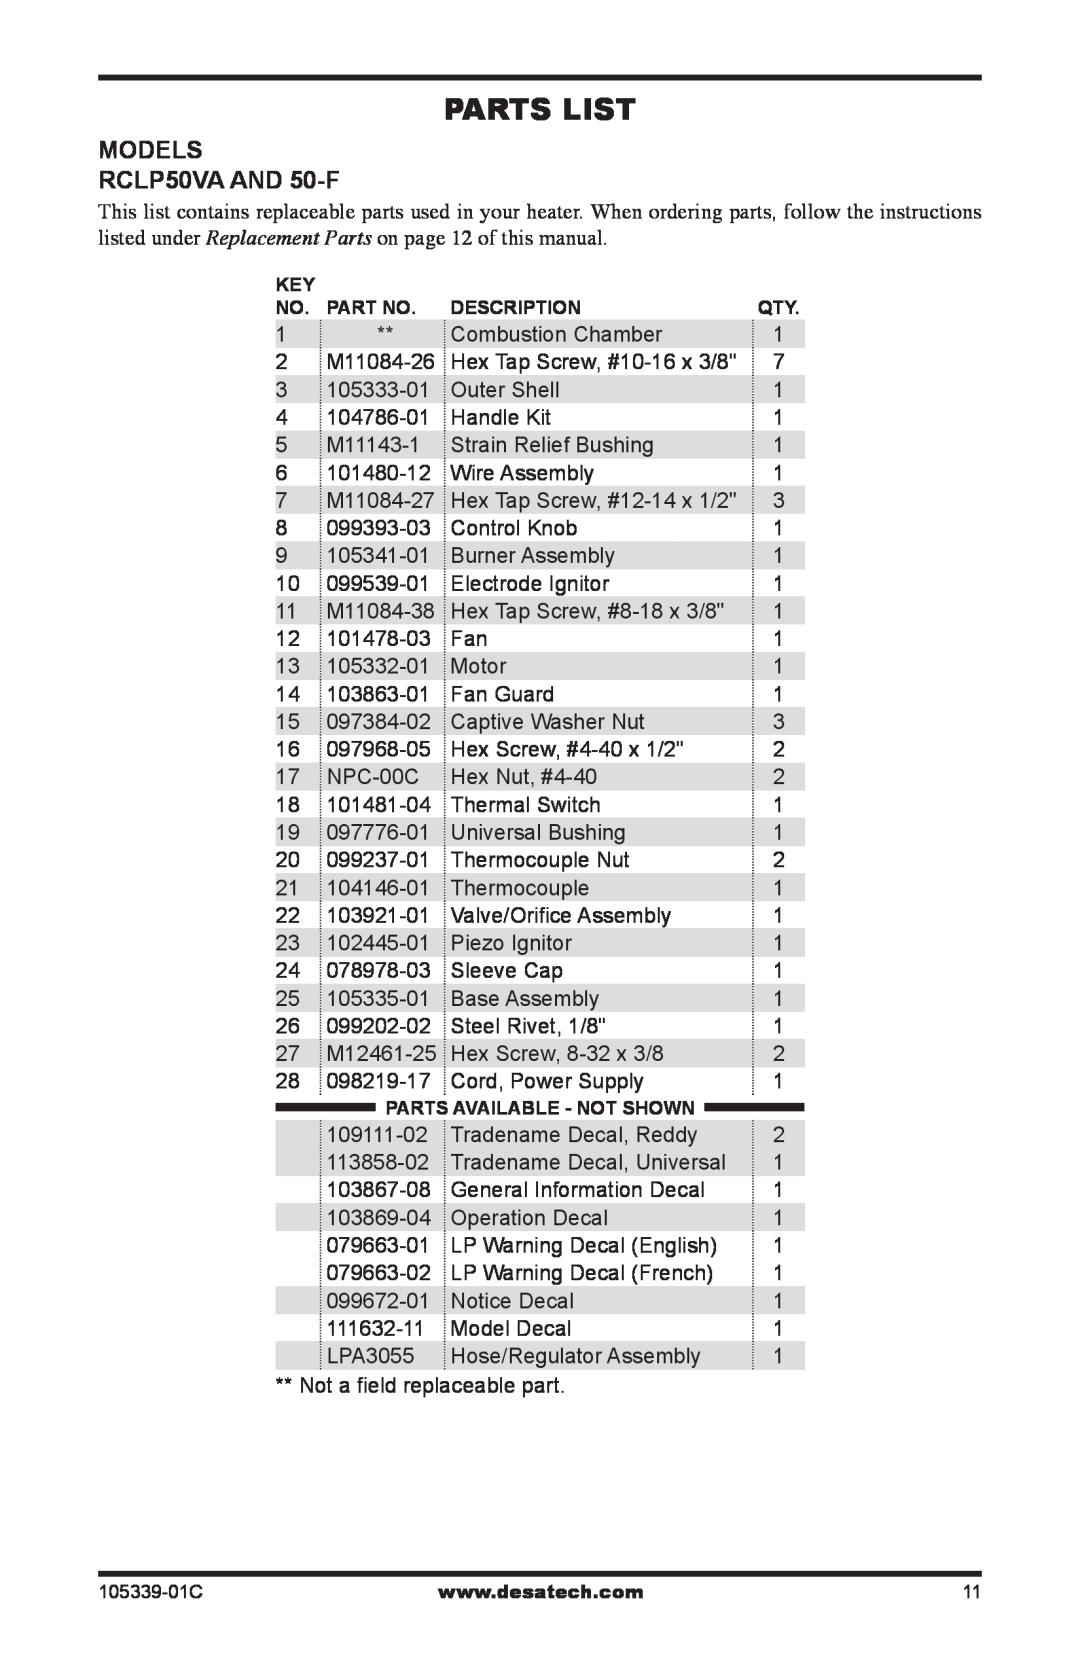 Desa RCLP50-F owner manual Parts List, MODELS RCLP50VA AND 50-F 